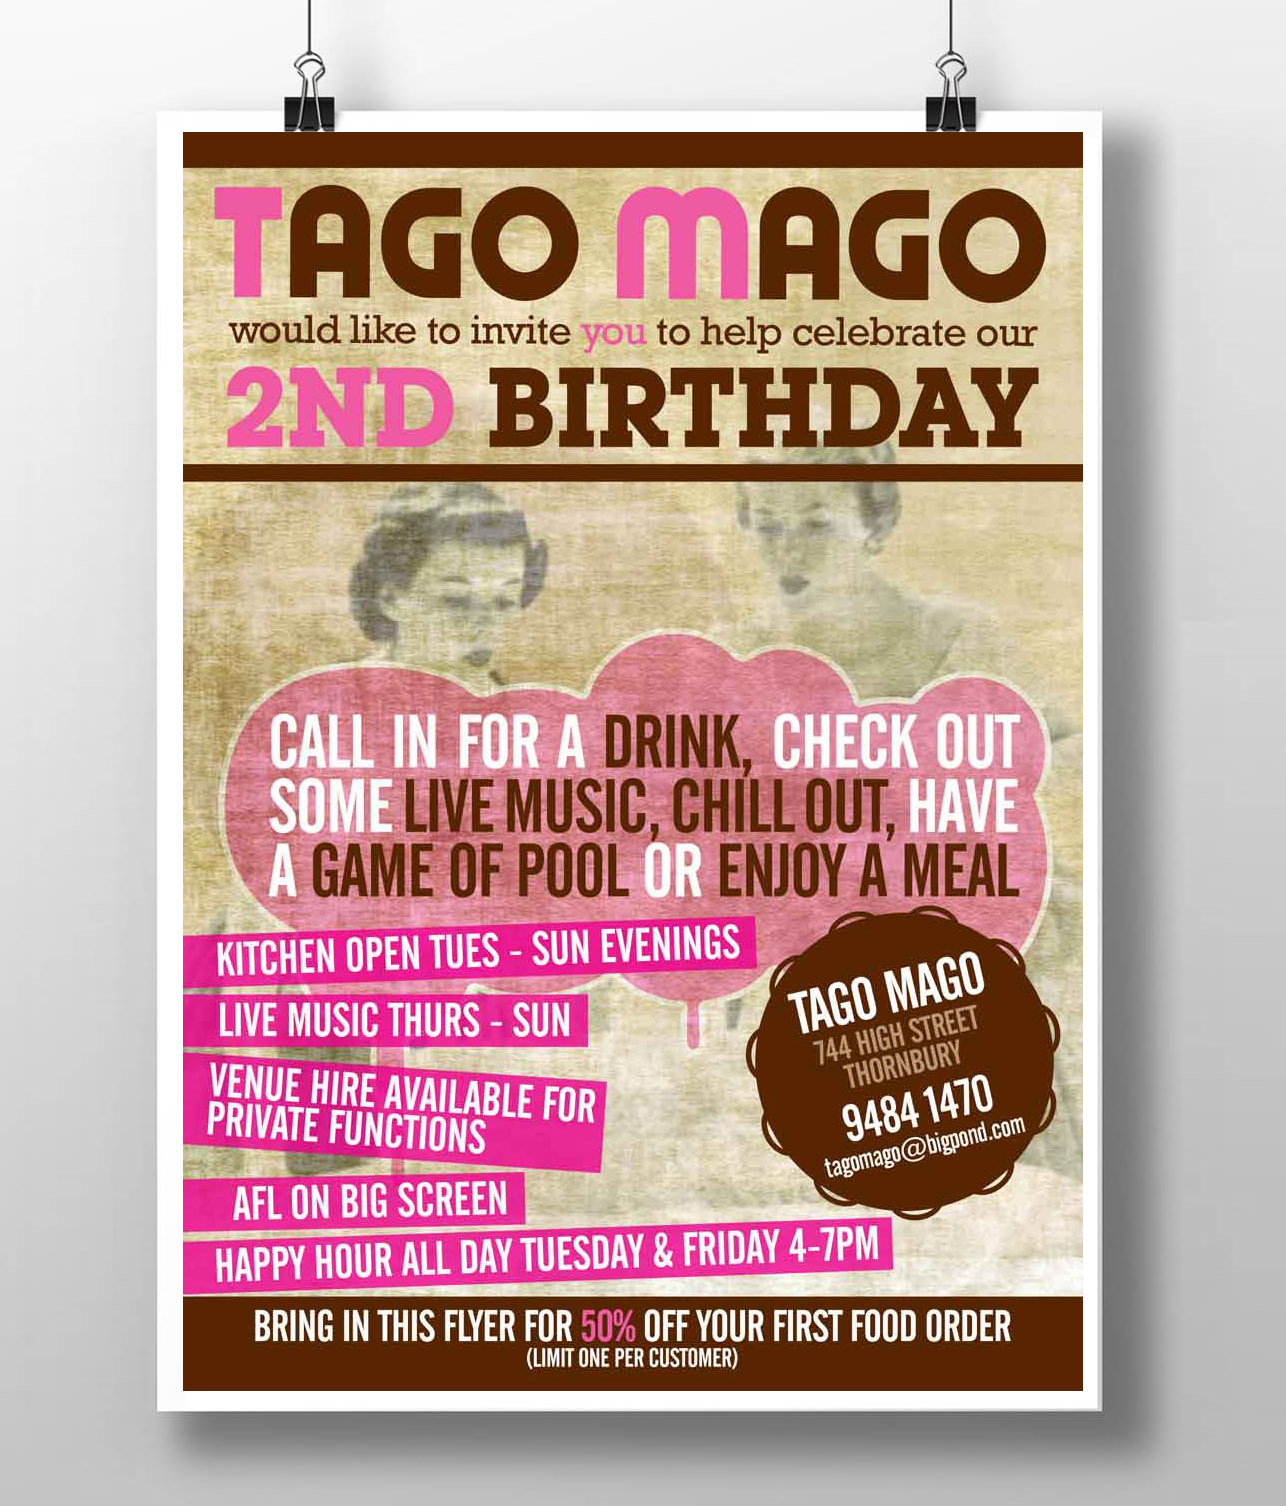 Tago Mago Poster Design